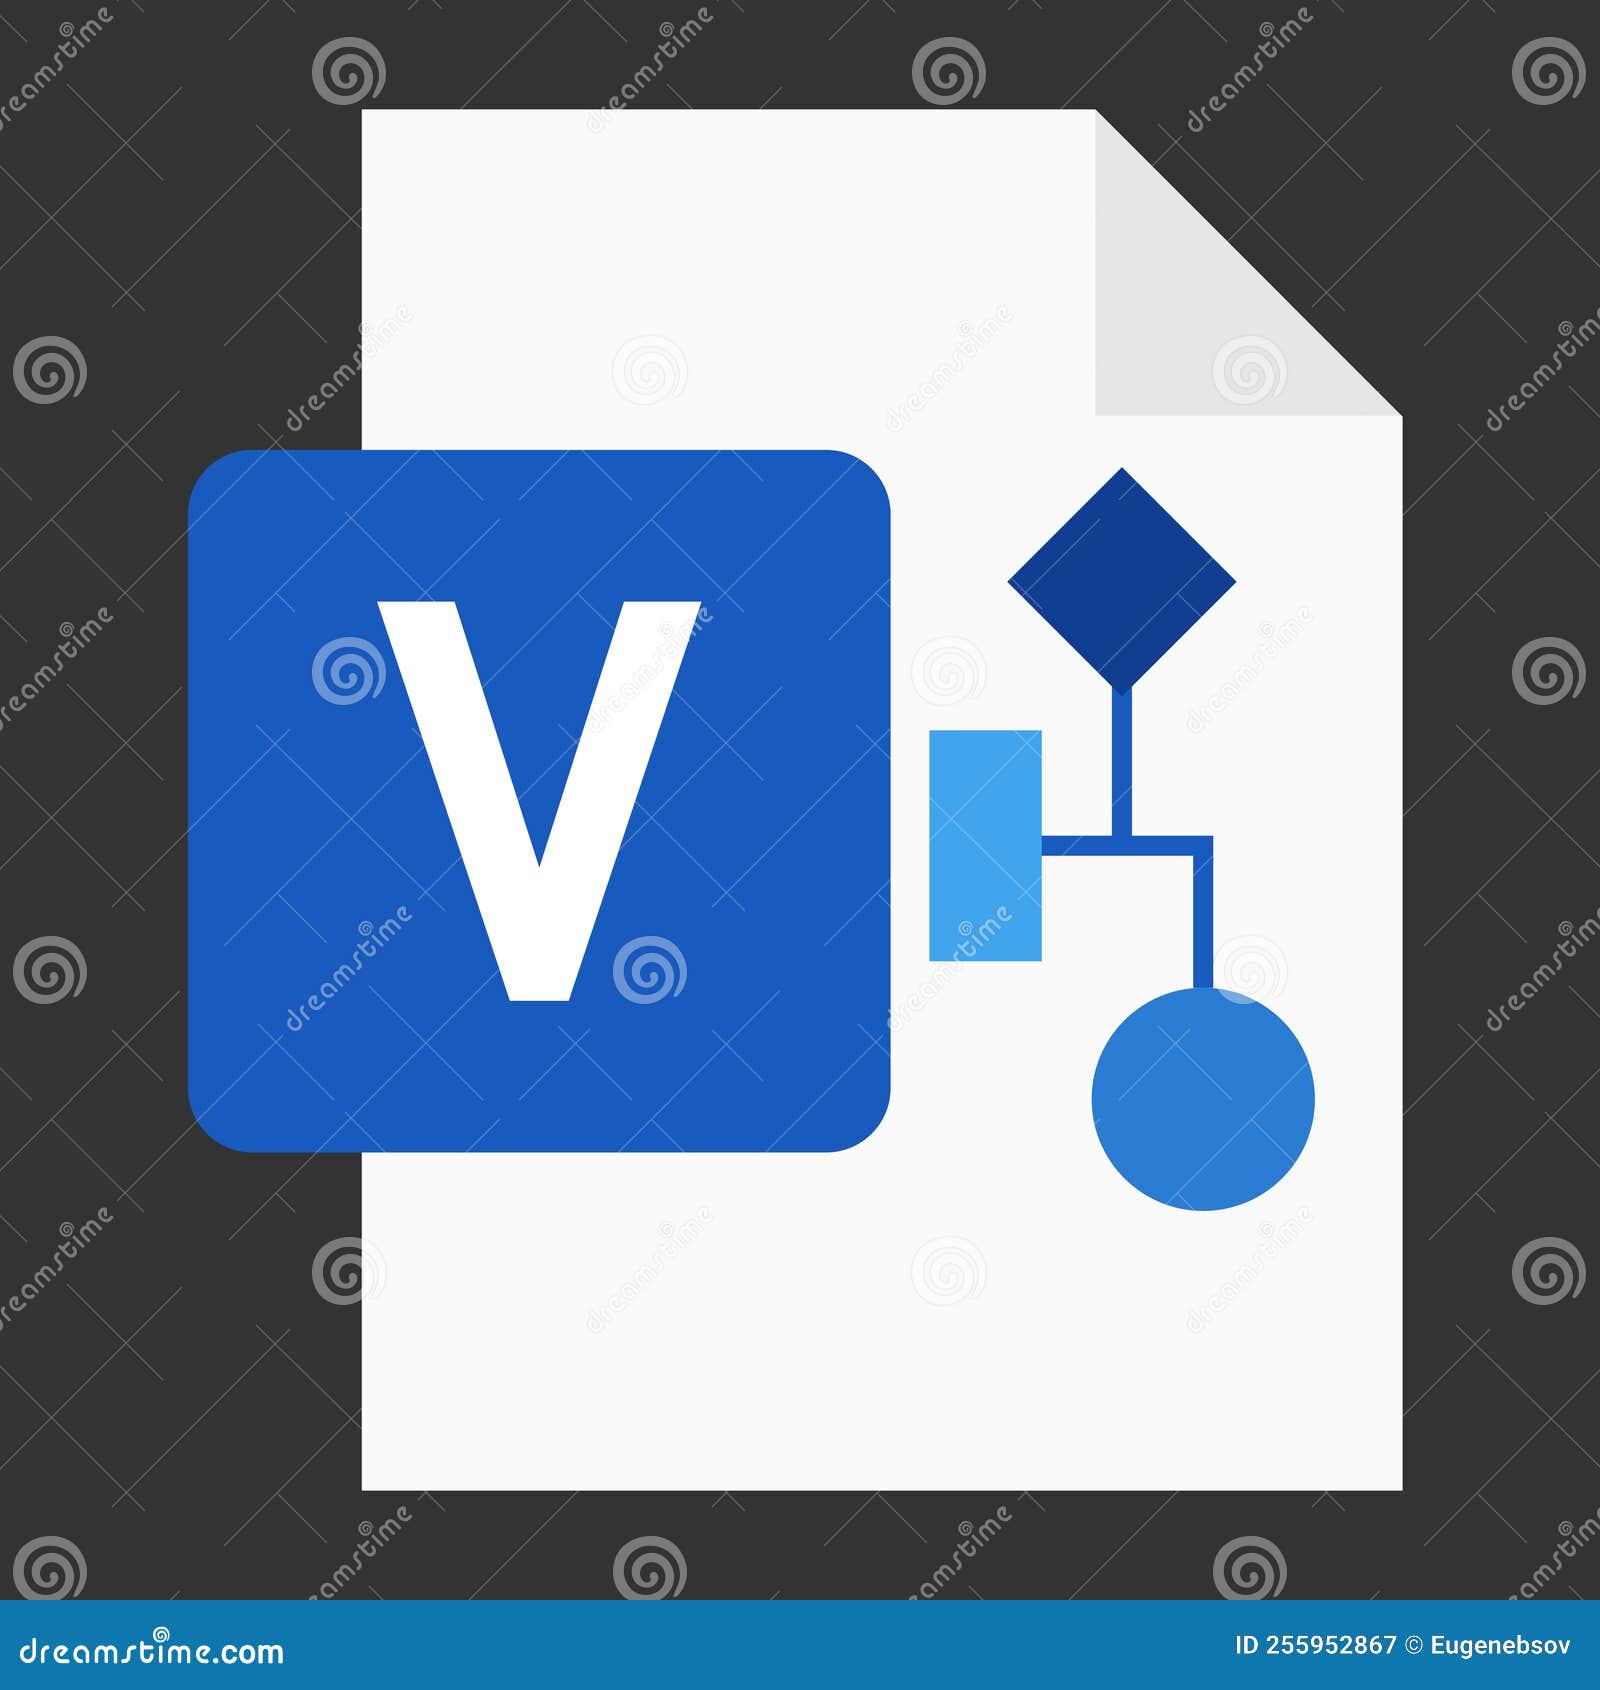 modern flat  of logo vsd visio drawing file icon